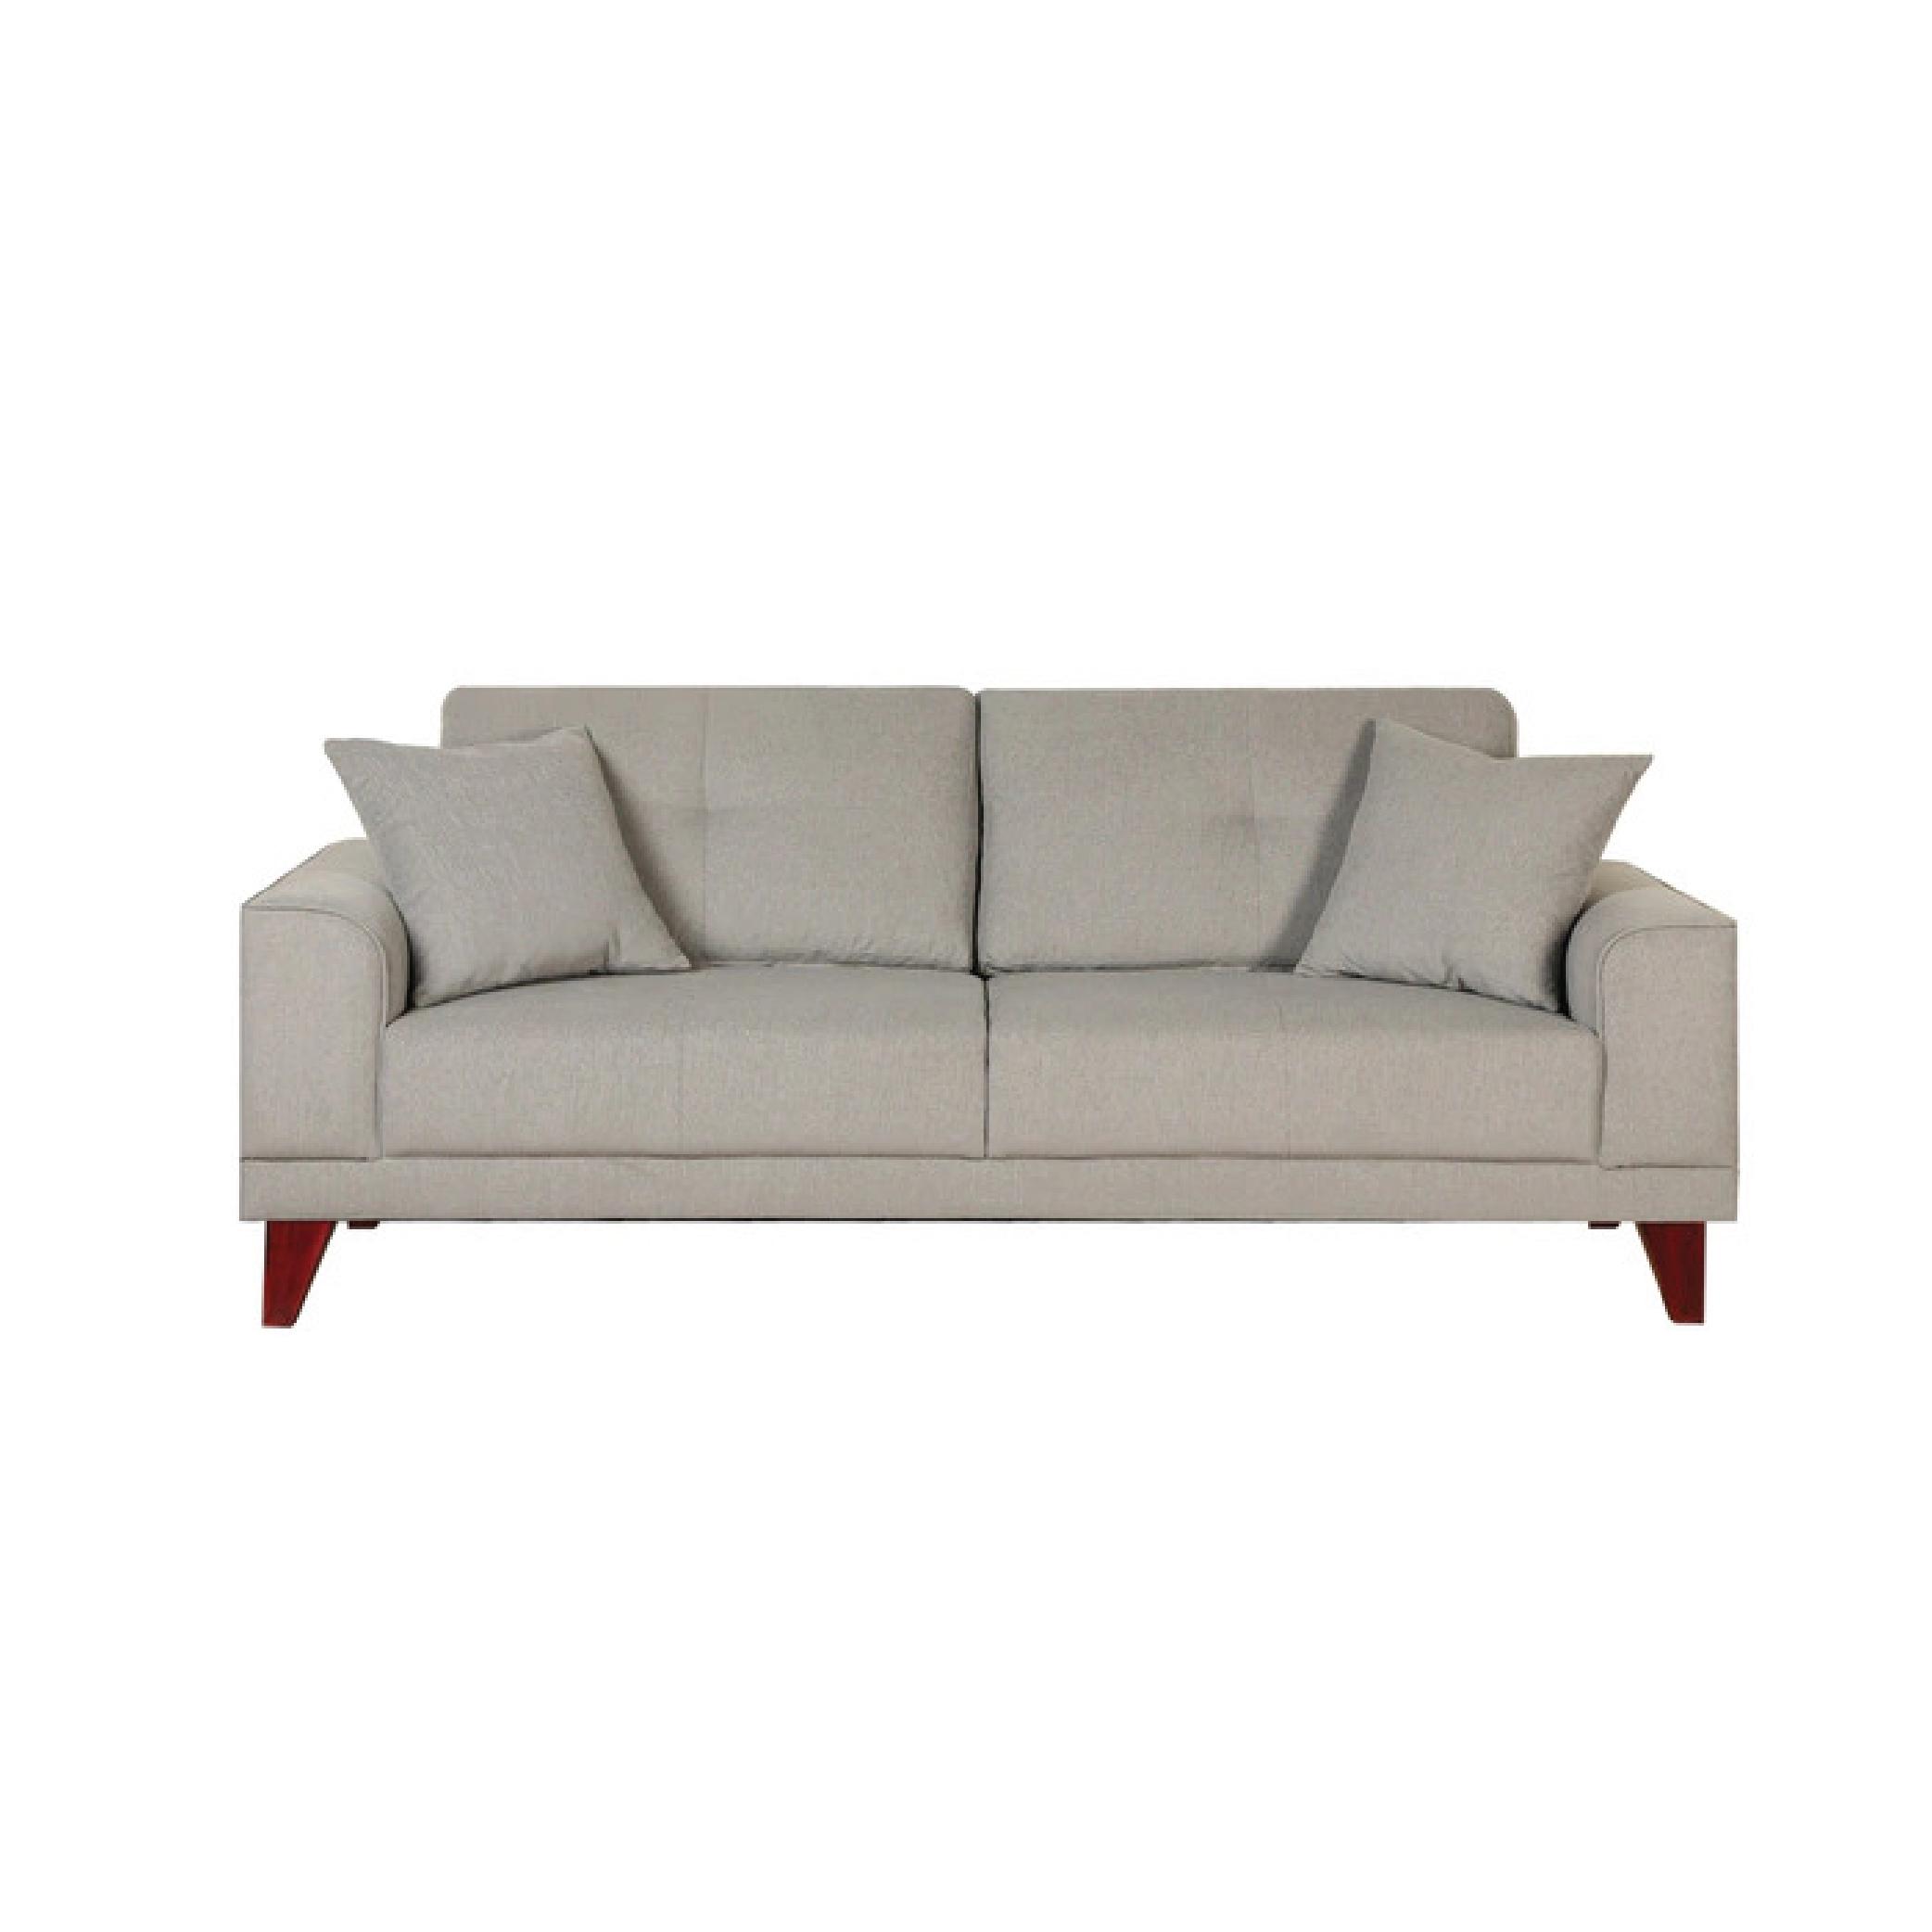 Irpino Two Seater Fabric Sofa